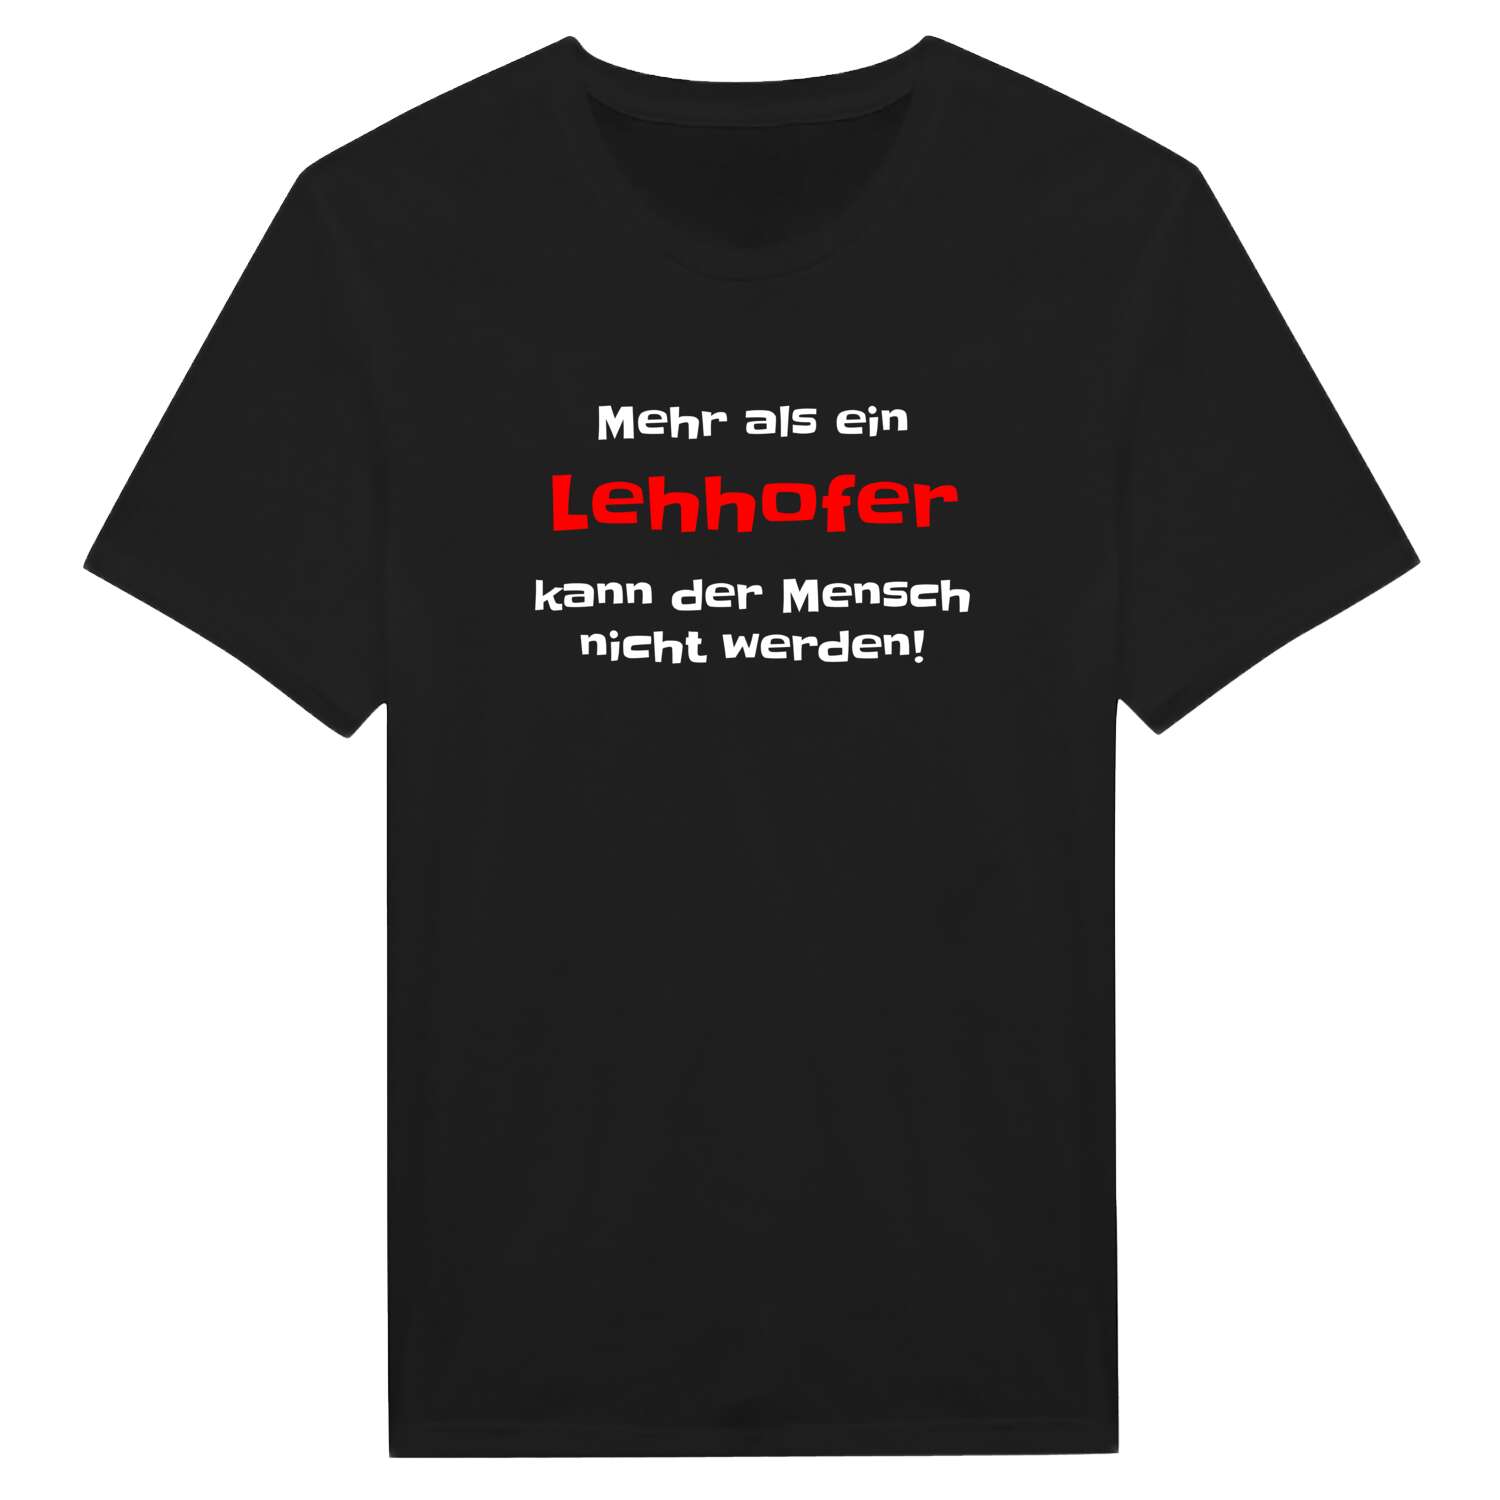 Lehhof T-Shirt »Mehr als ein«